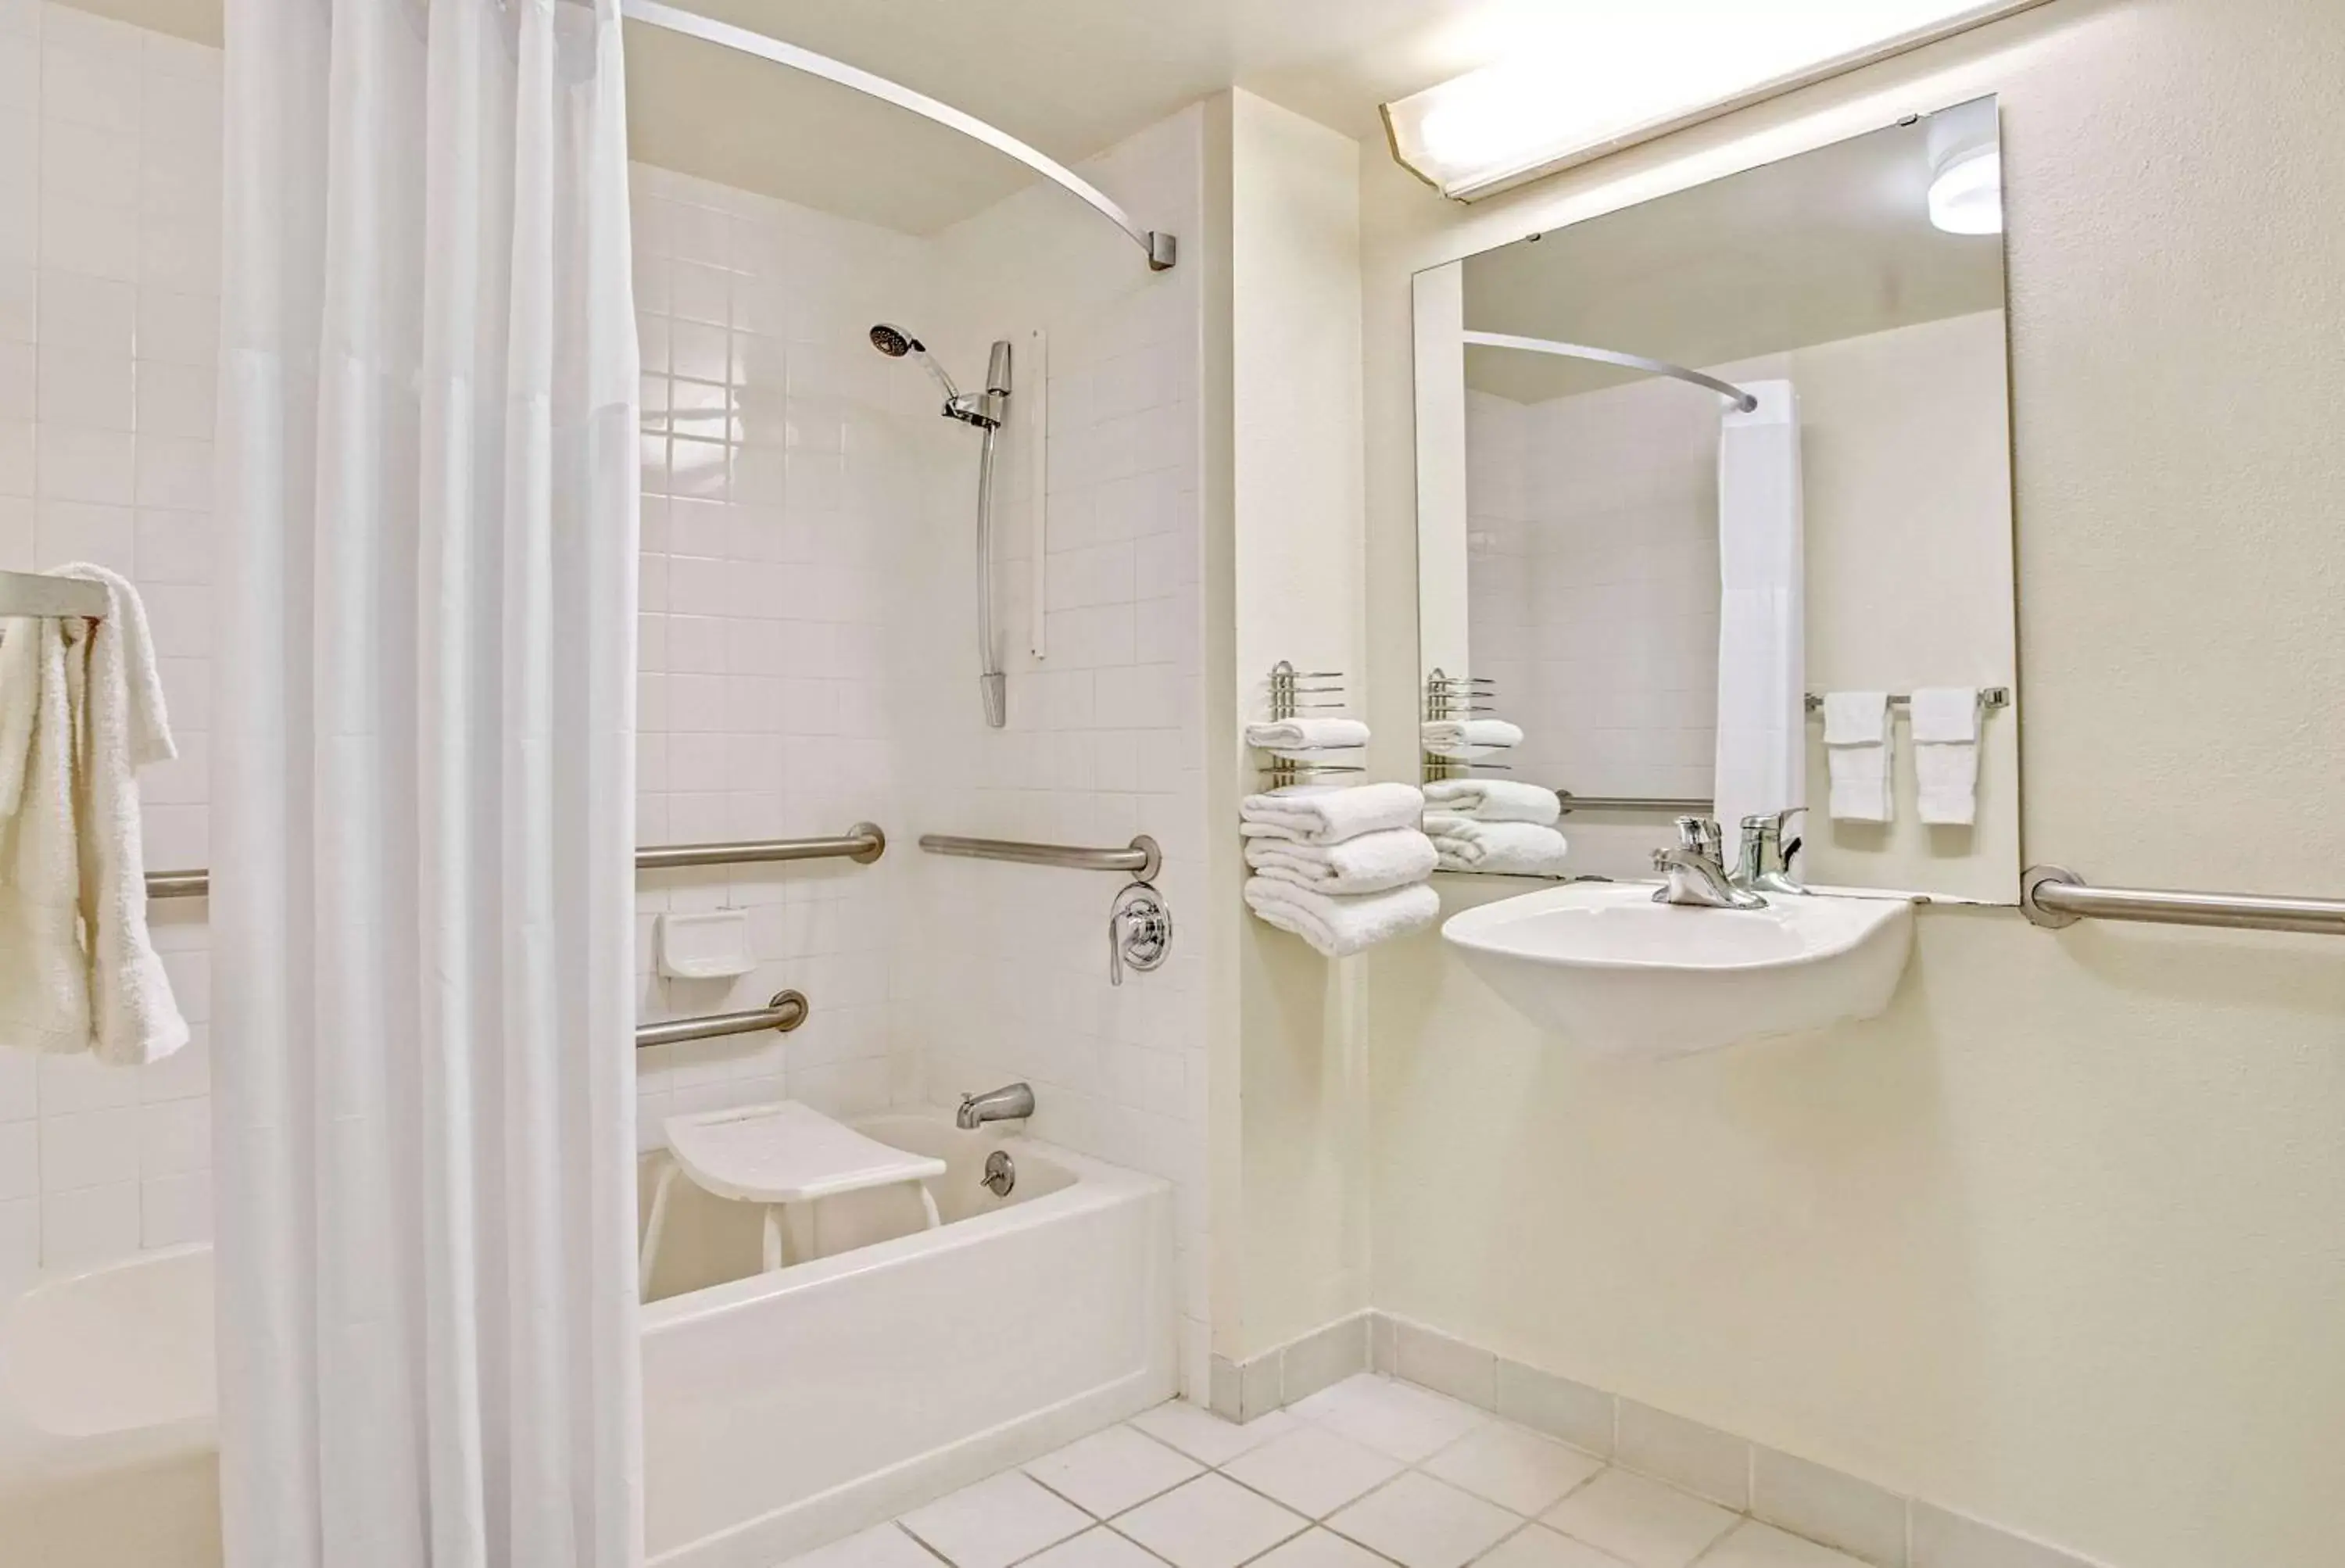 Photo of the whole room, Bathroom in Days Inn by Wyndham Bradenton - Near the Gulf